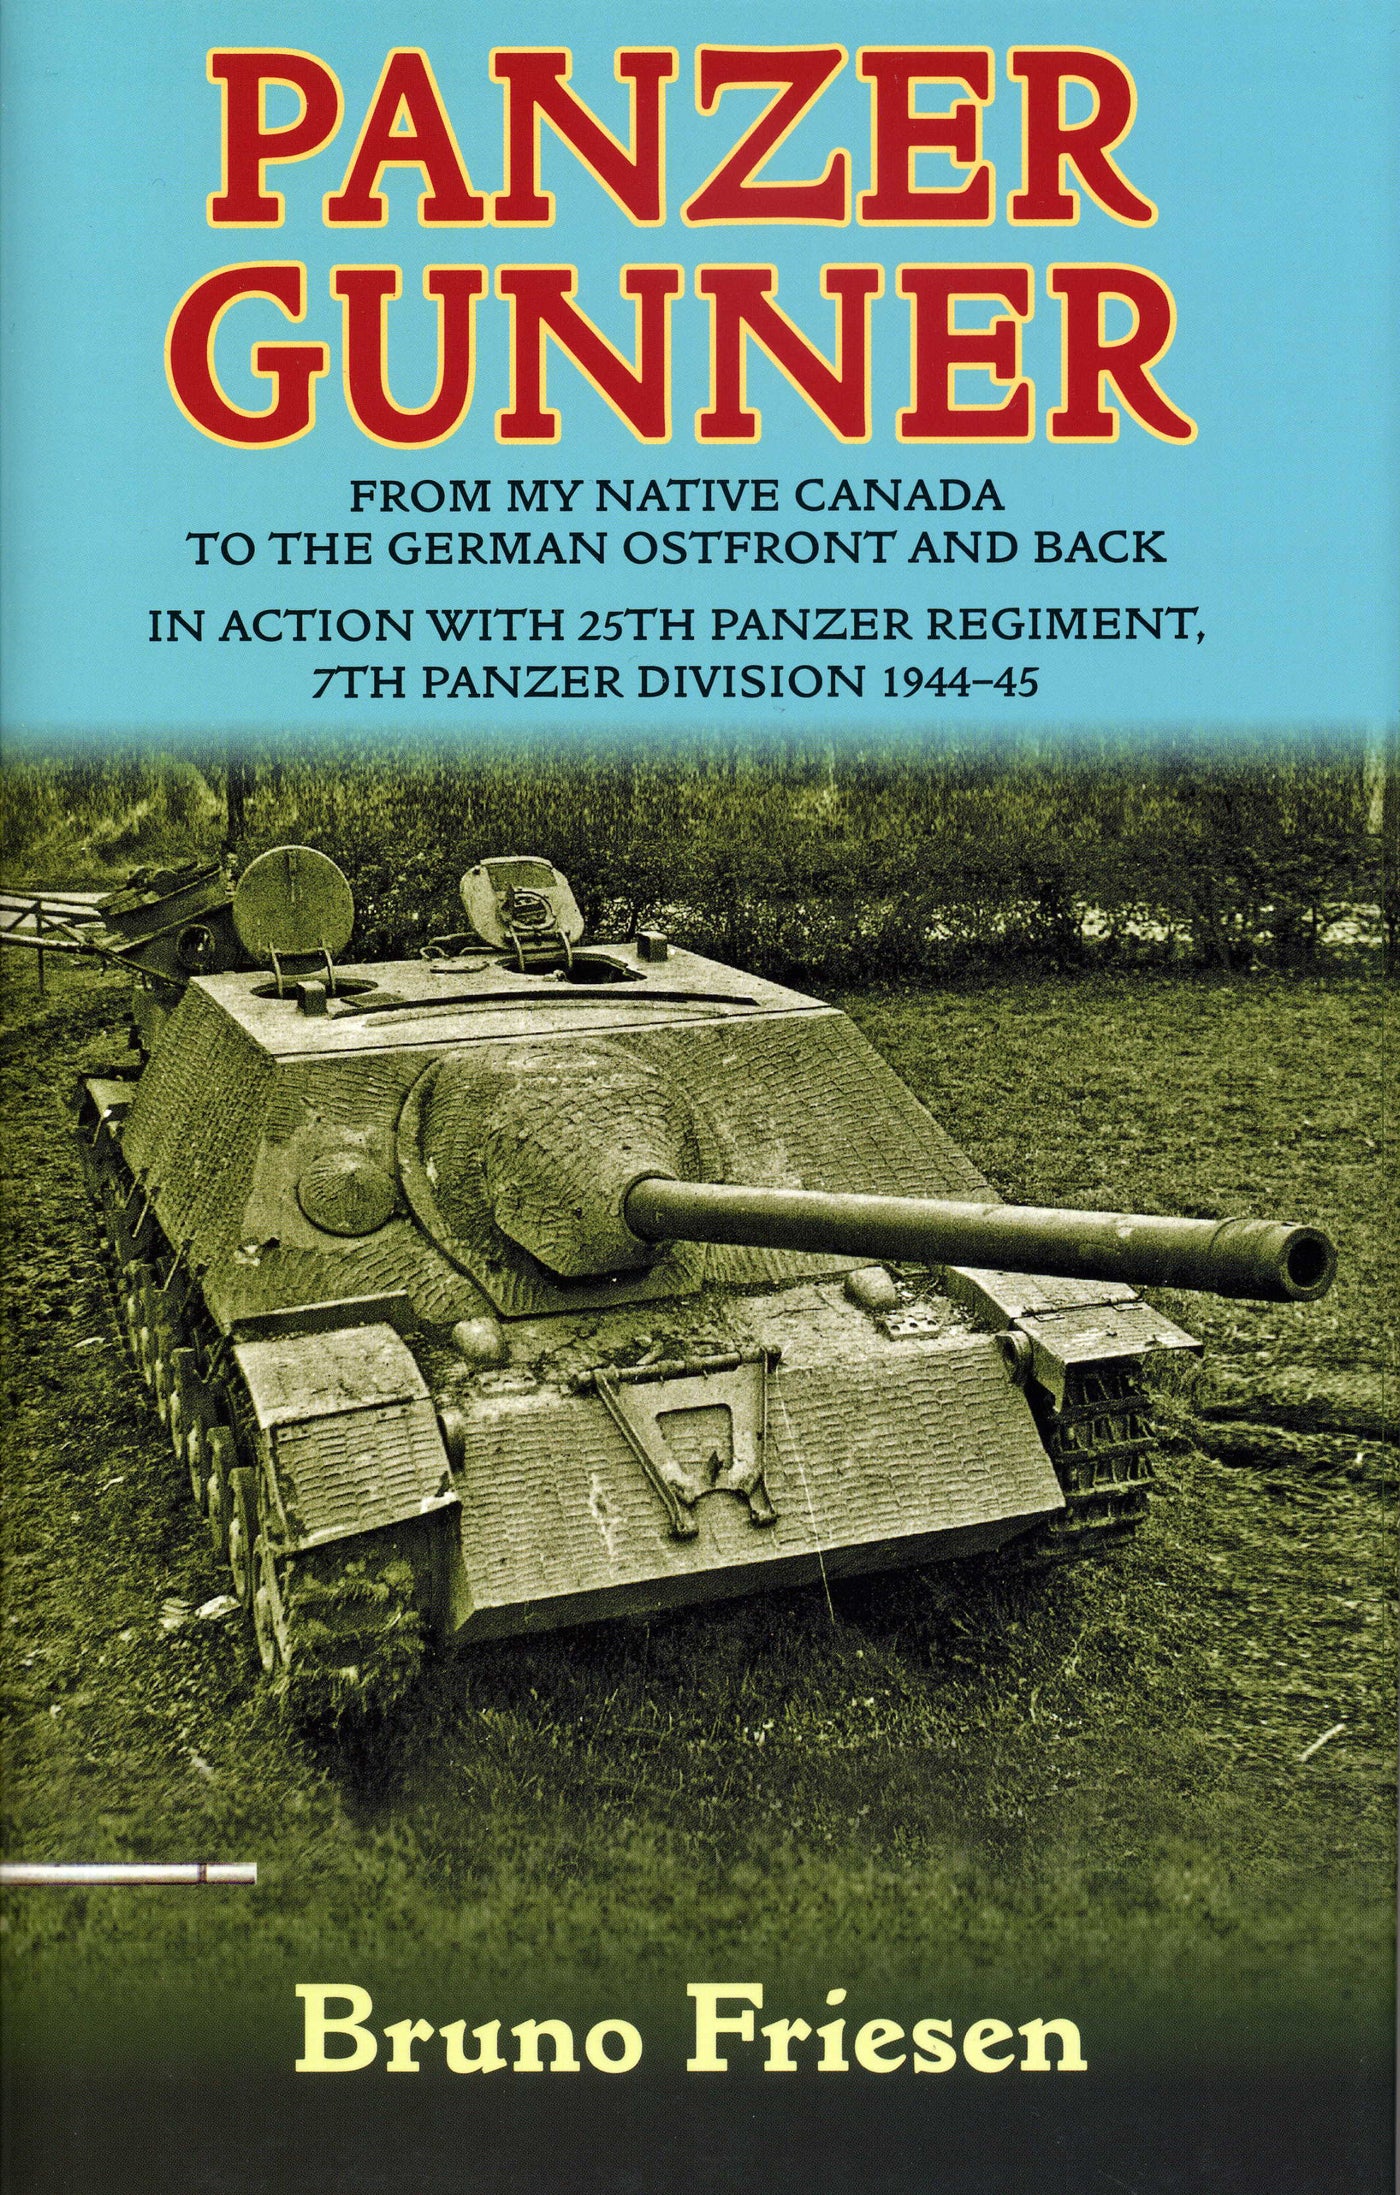 Panzer Gunner